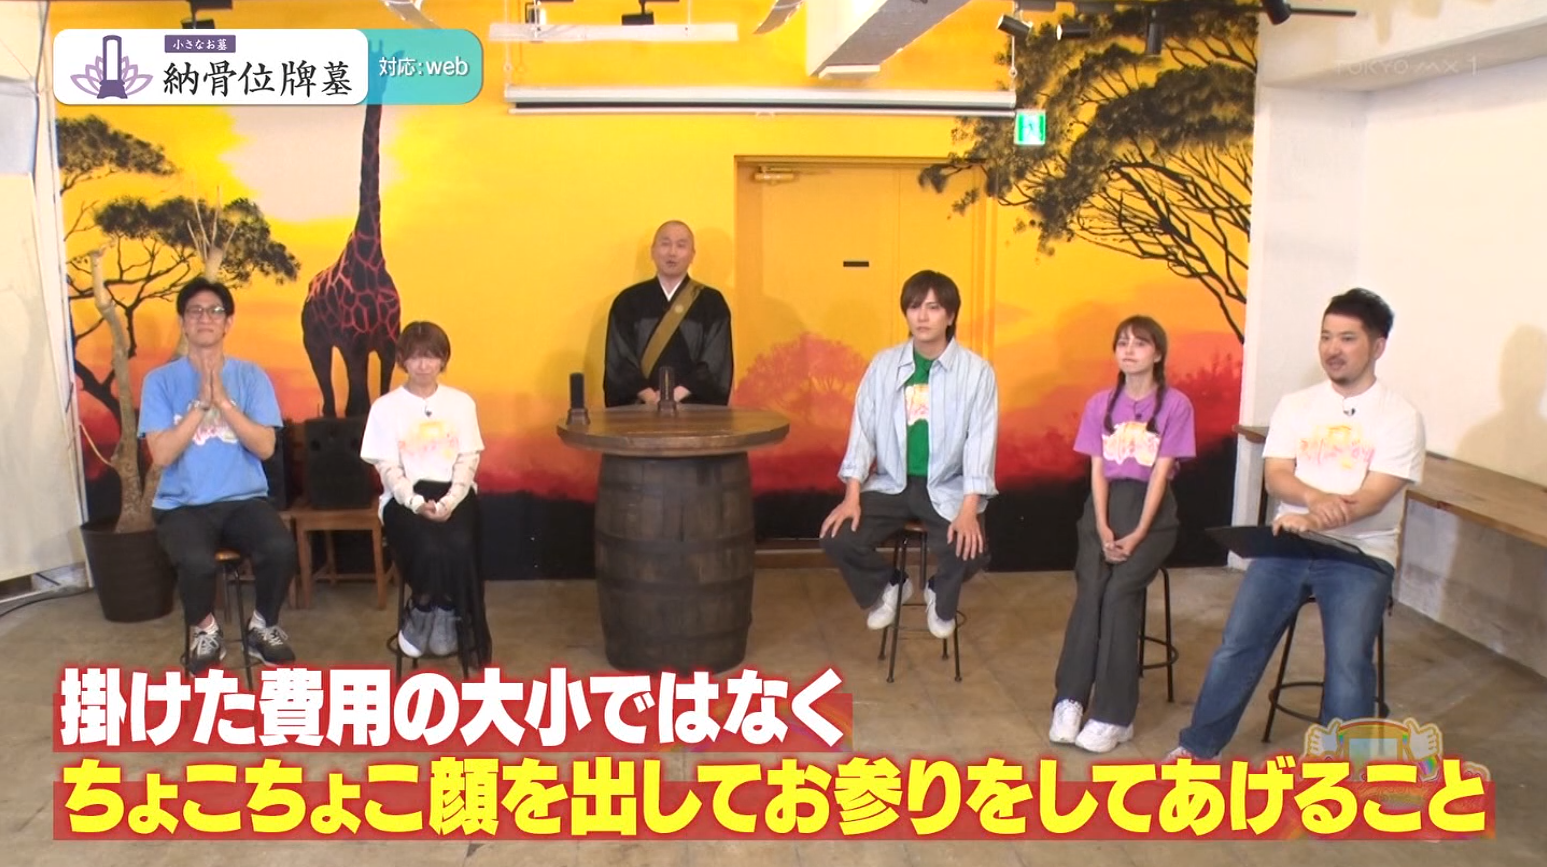 「小さなお墓 納骨位牌墓」が、TOKYO MX系テレビ番組「ええじゃないか!!」にてご紹介いただきました。